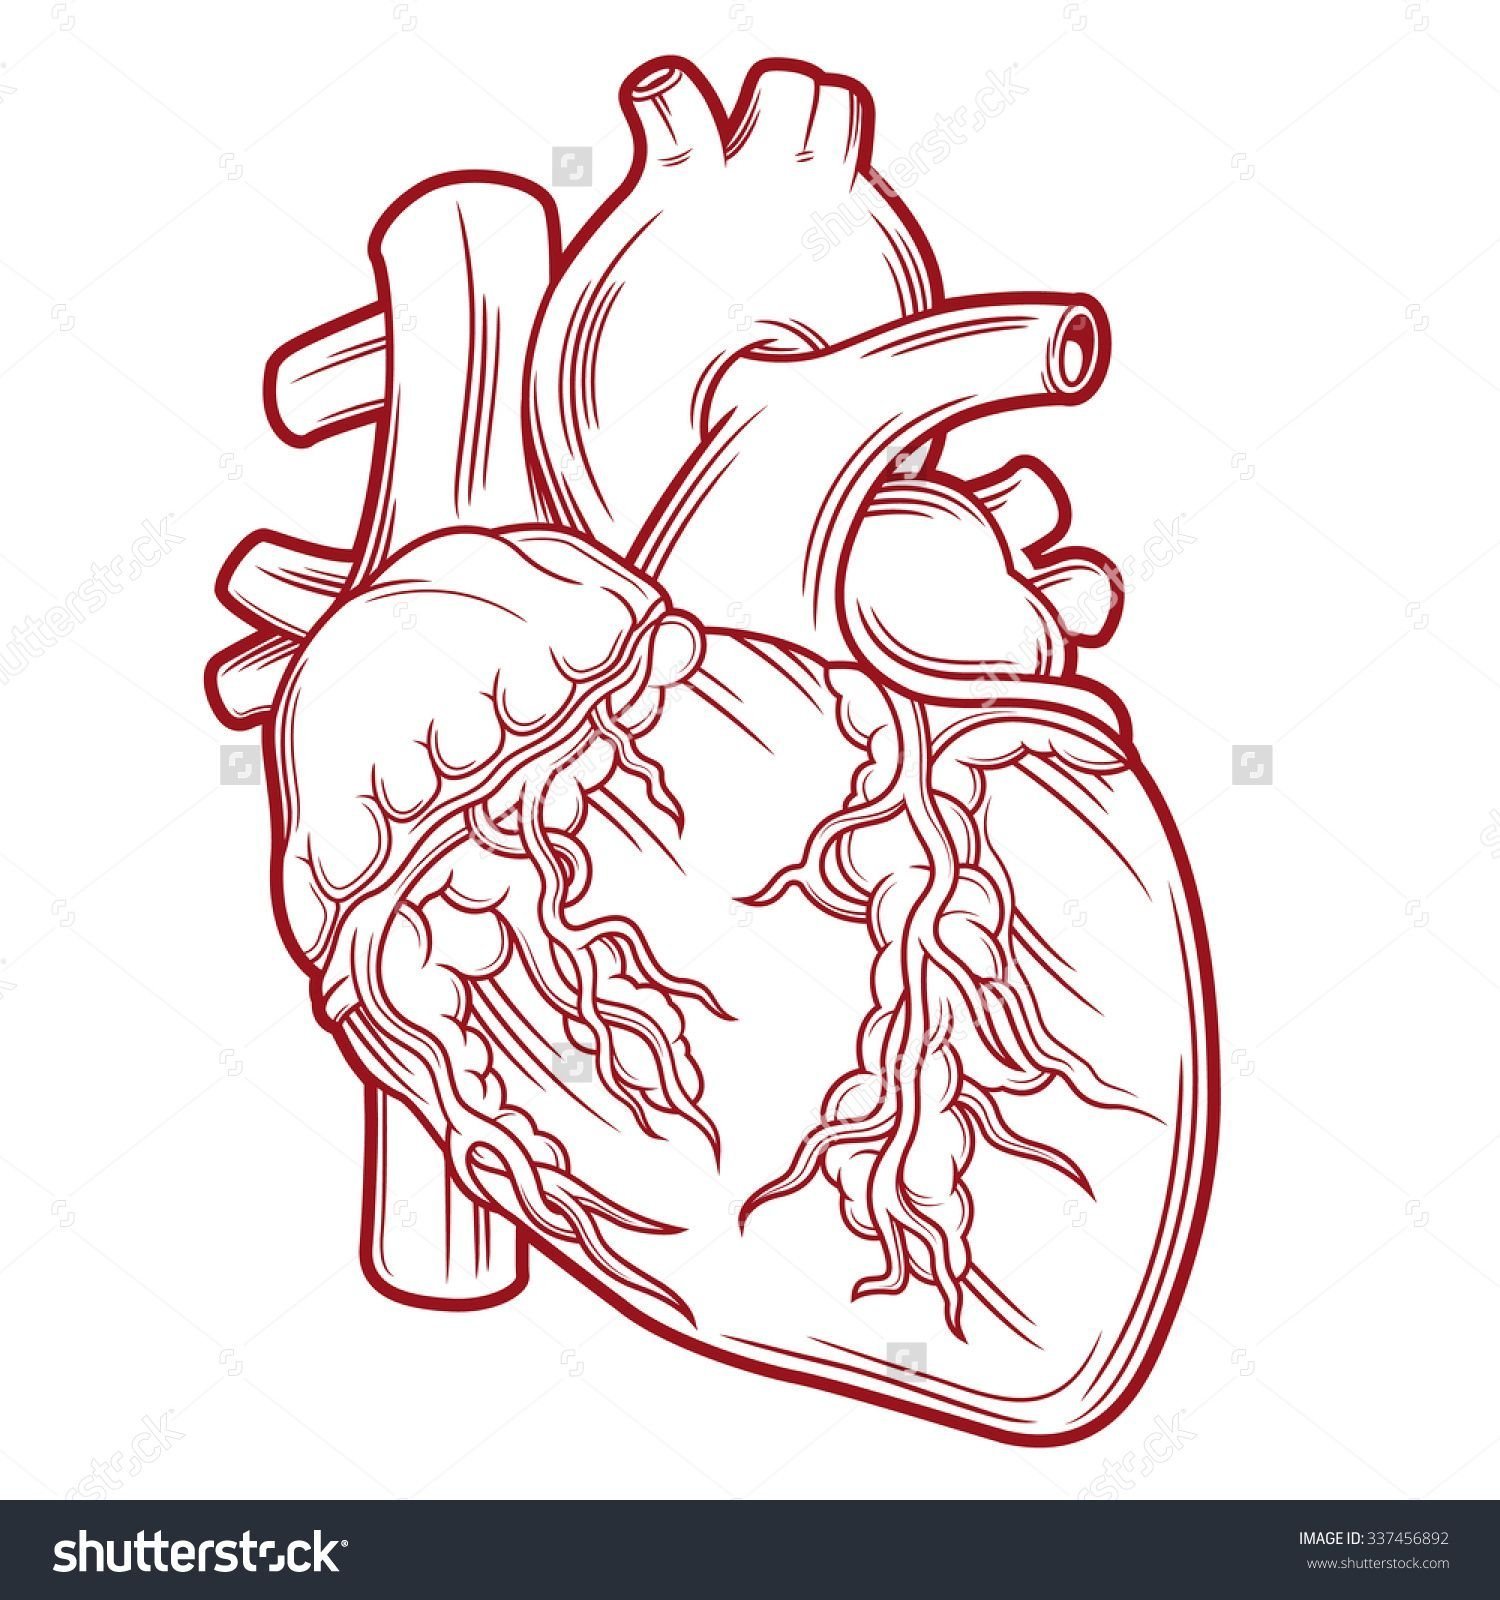 Сердце человека контур на прозрачном фоне фото